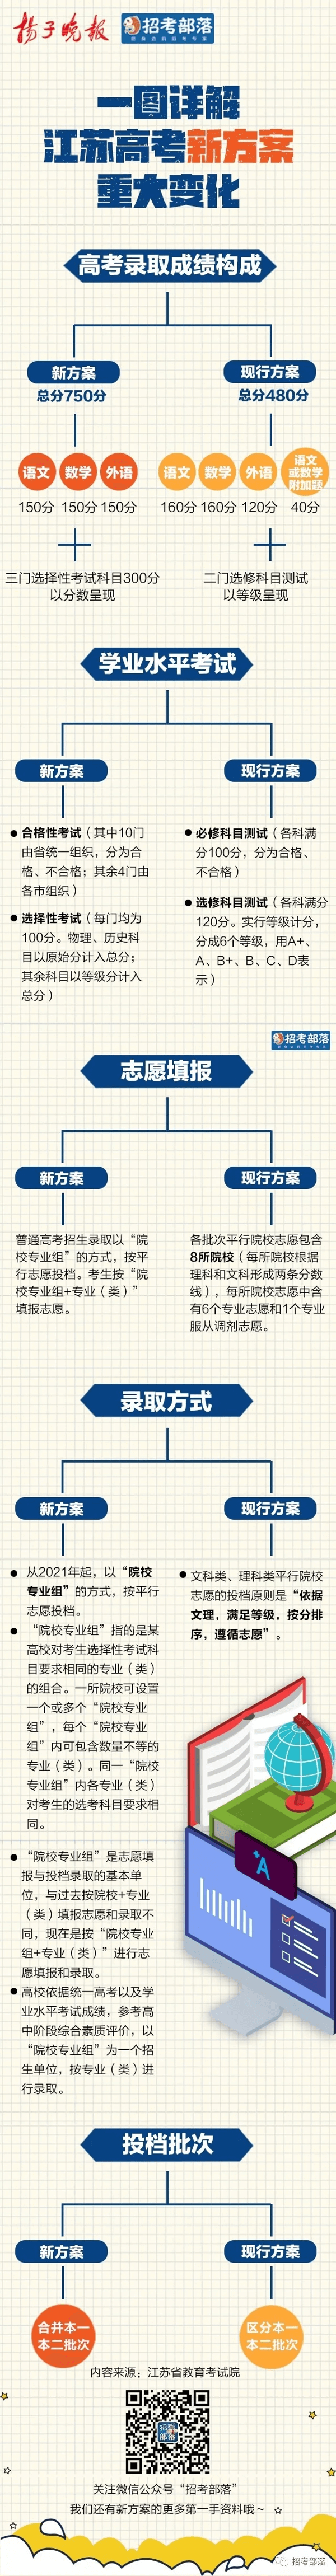 江苏省高考满分多少分2021(小高考满分